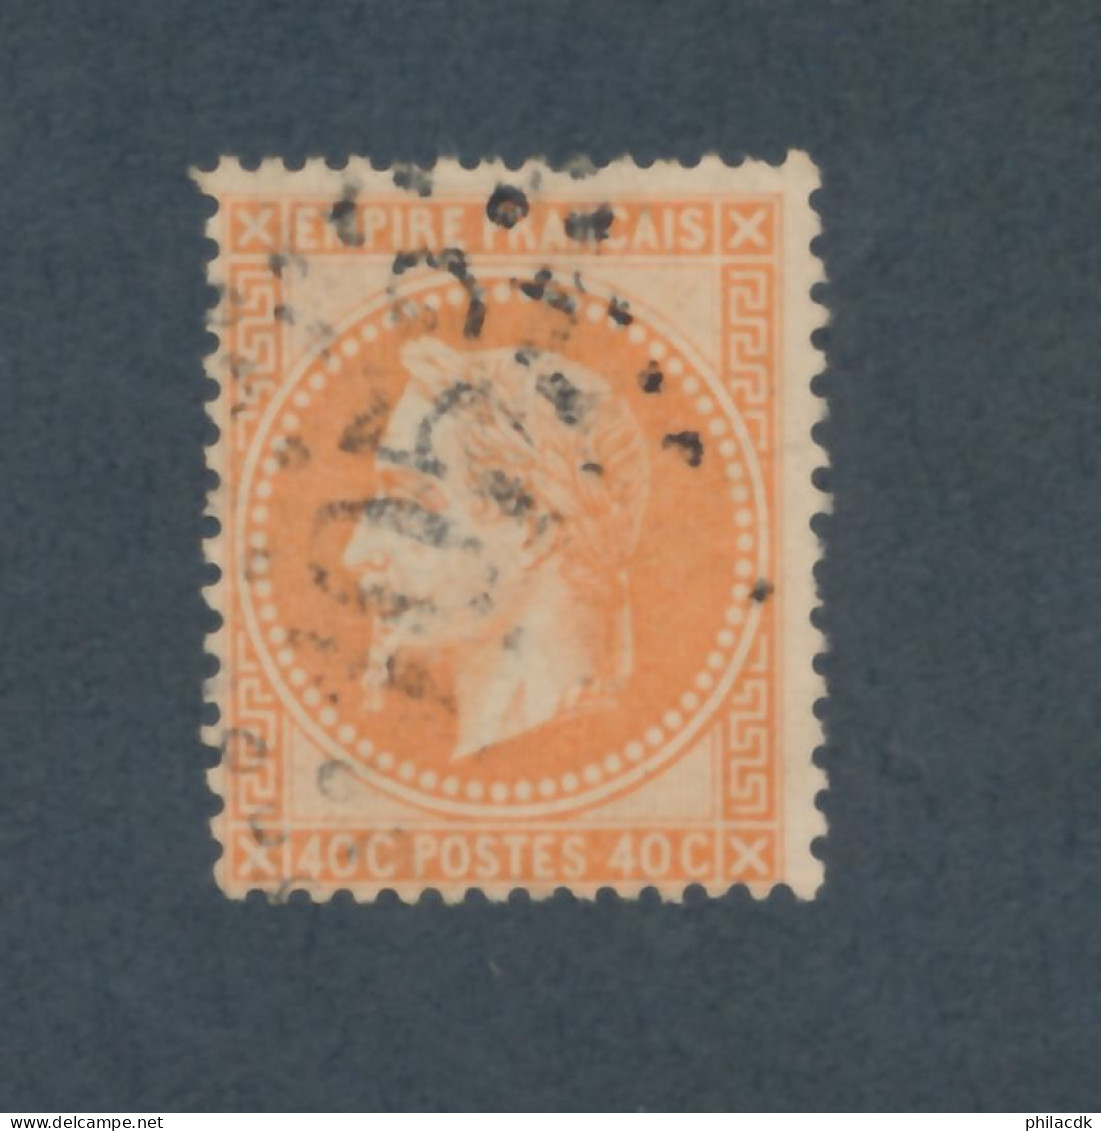 FRANCE - N° 31 OBLITERE AVEC GC 1053 CLERMONT FERRAND - COTE : 25€ - 1868 - 1863-1870 Napoléon III Lauré